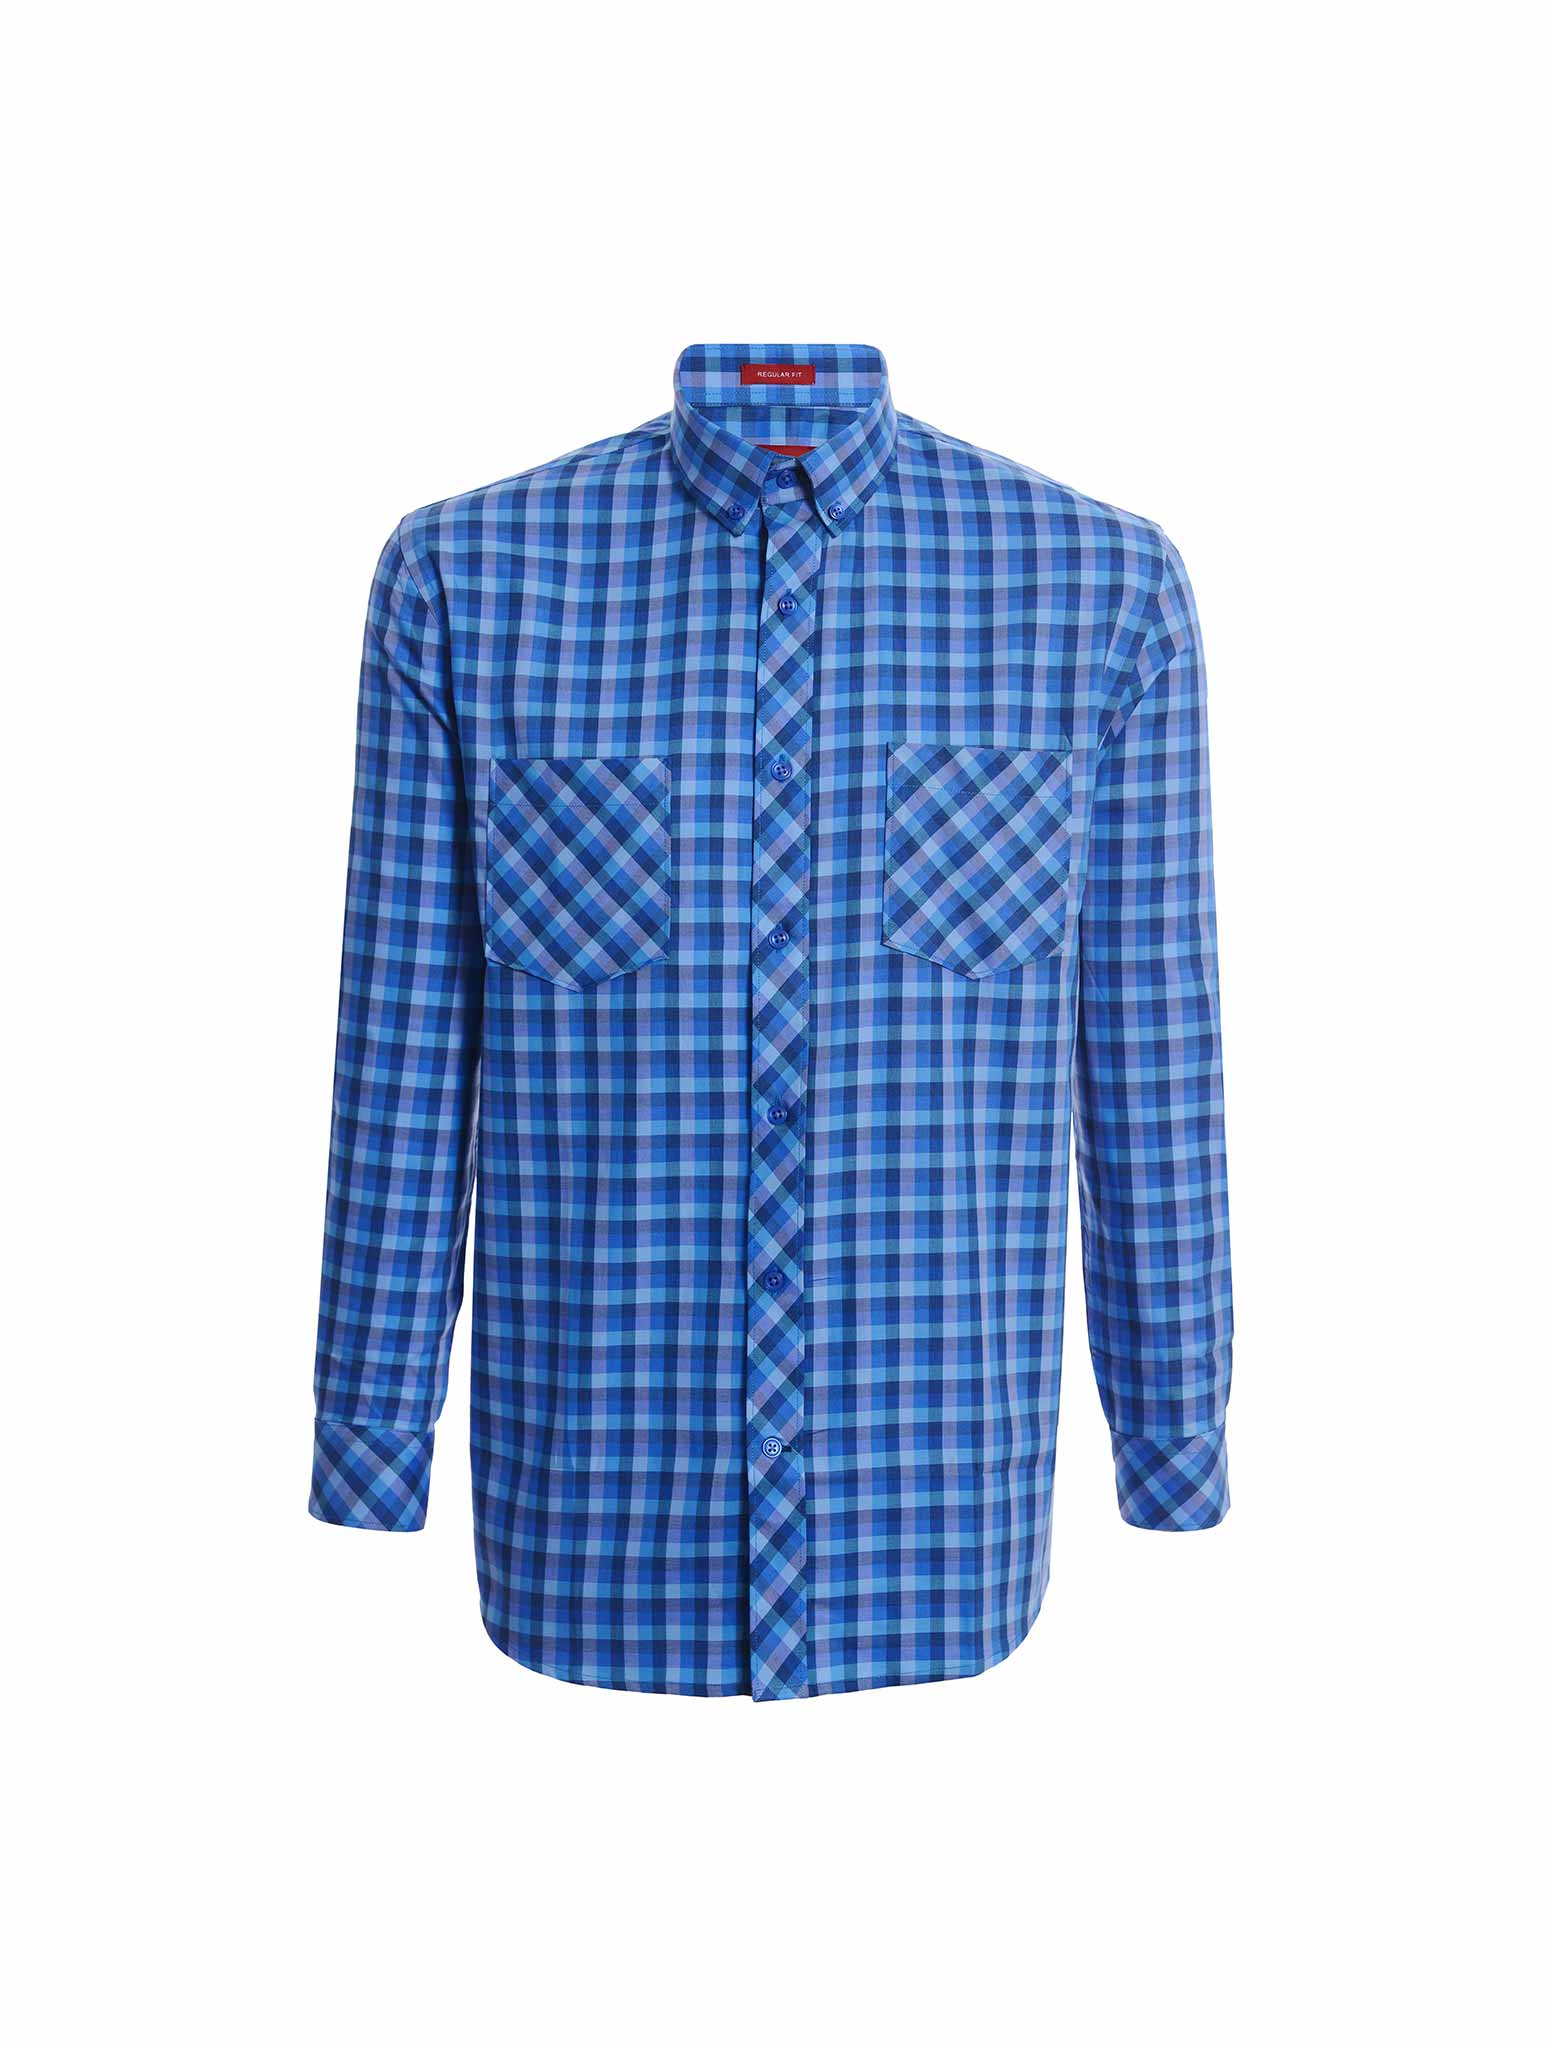 Jazz & Co Men Standard Size blue long sleeve shirt